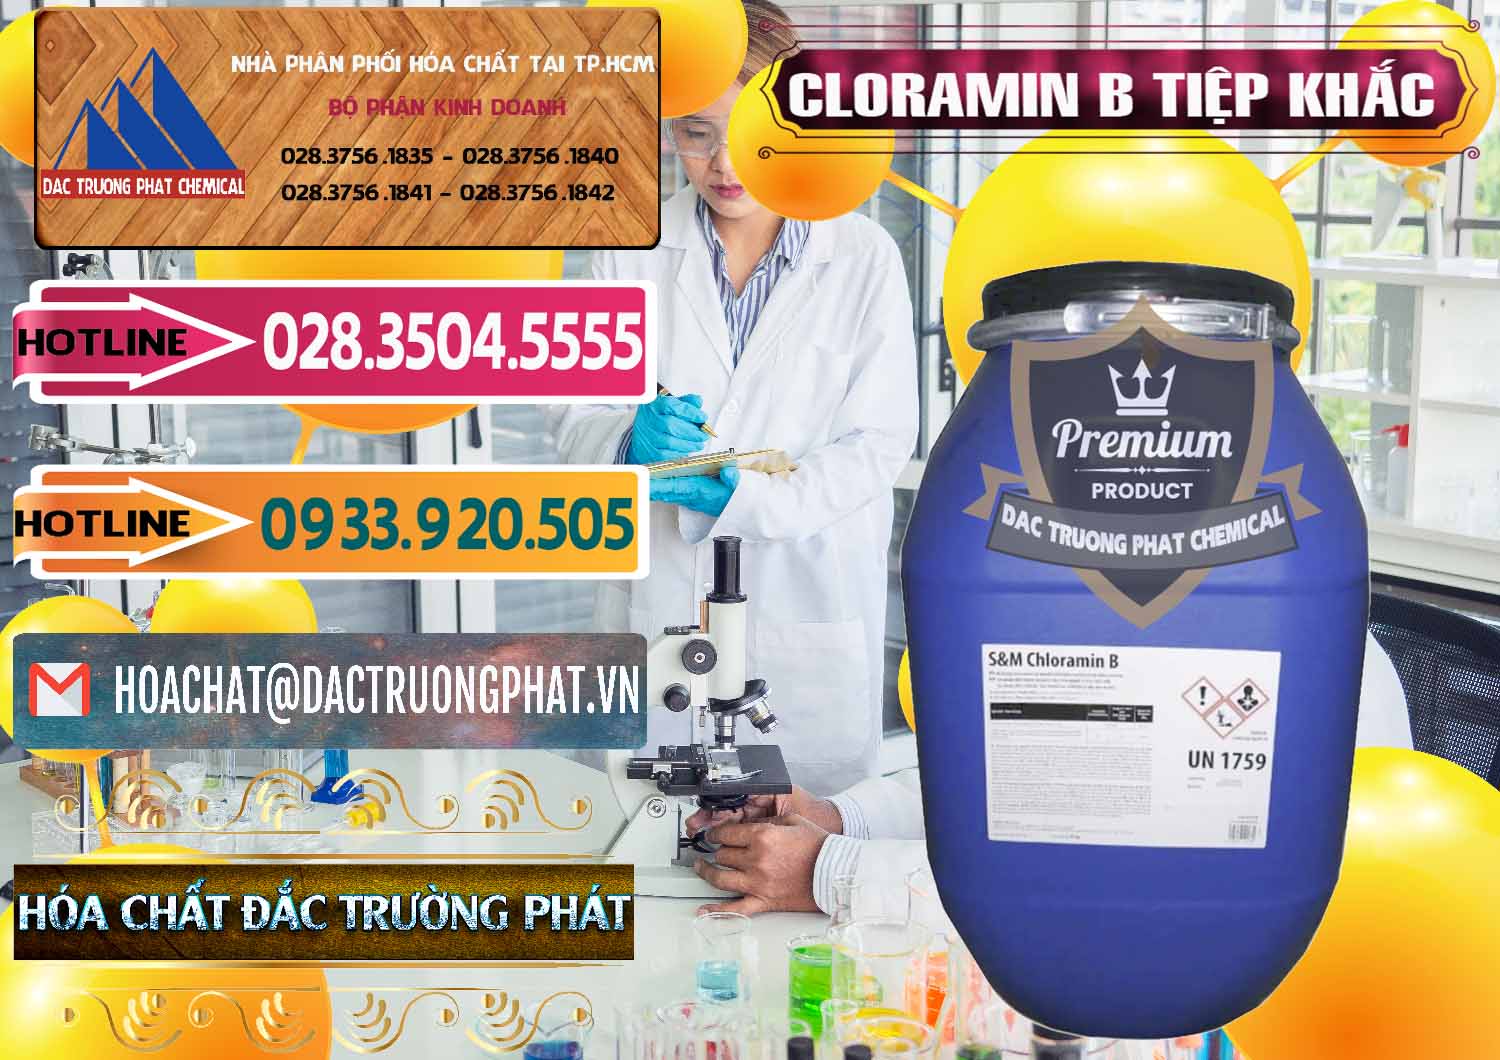 Công ty nhập khẩu _ bán Cloramin B Cộng Hòa Séc Tiệp Khắc Czech Republic - 0299 - Công ty nhập khẩu và phân phối hóa chất tại TP.HCM - dactruongphat.vn